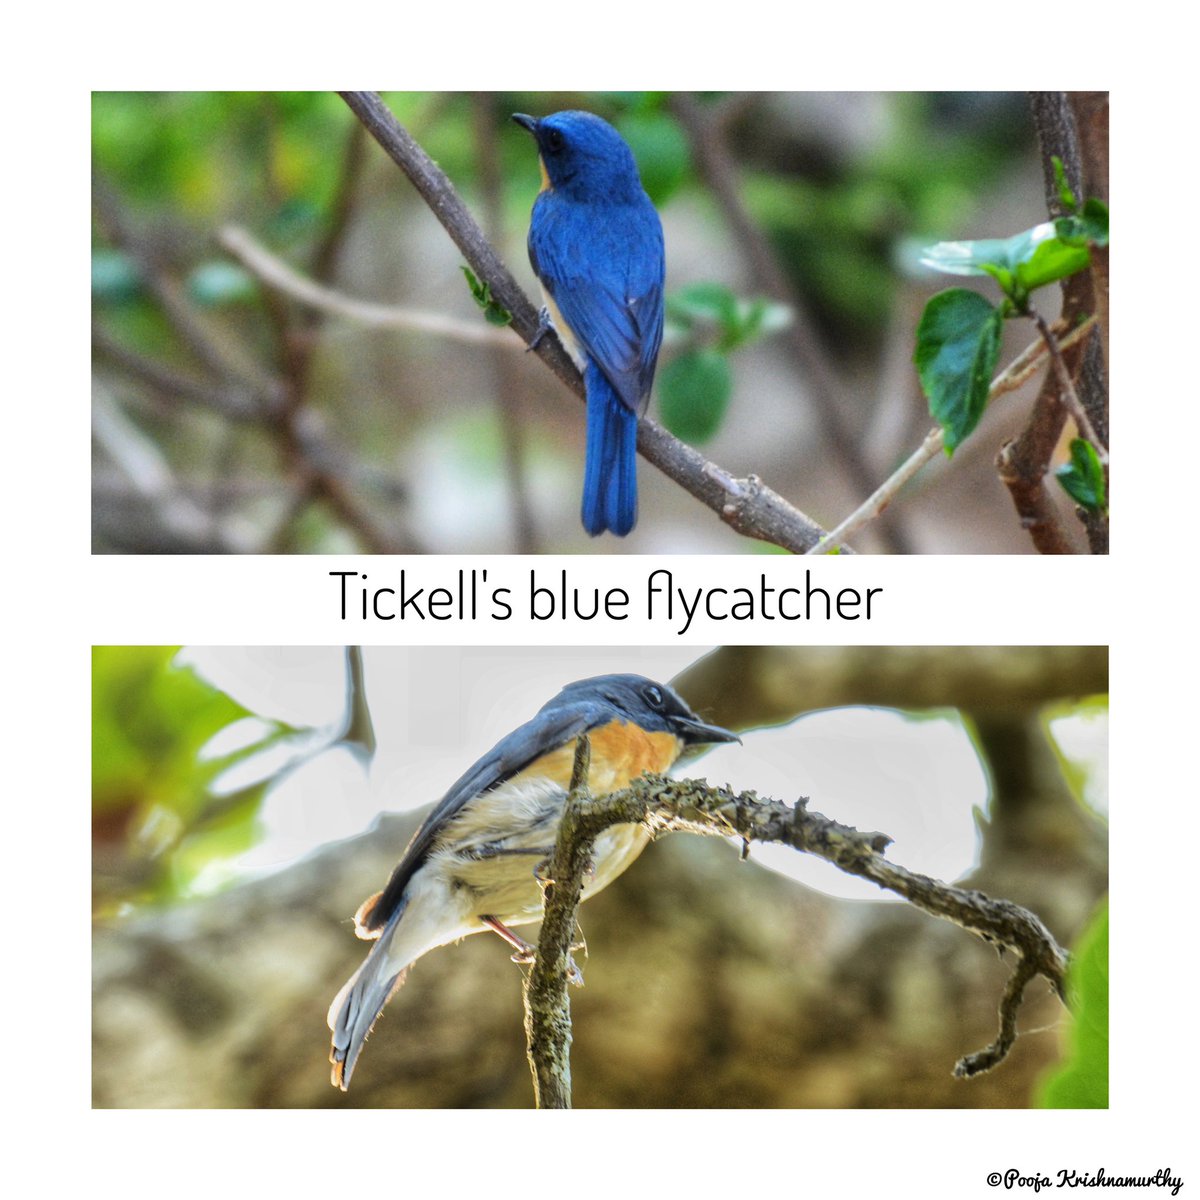 Beautifully Blue 💙

#blue #colourful  #nature #birds #birdsofinstagram #birdsofindia #southindia #birding #traveller #travelgram #traveltoexplore #explore #followers #cornelllabofornithology #wildlife #wildlifephotography #ornitology #wildlifeconservation #happiness